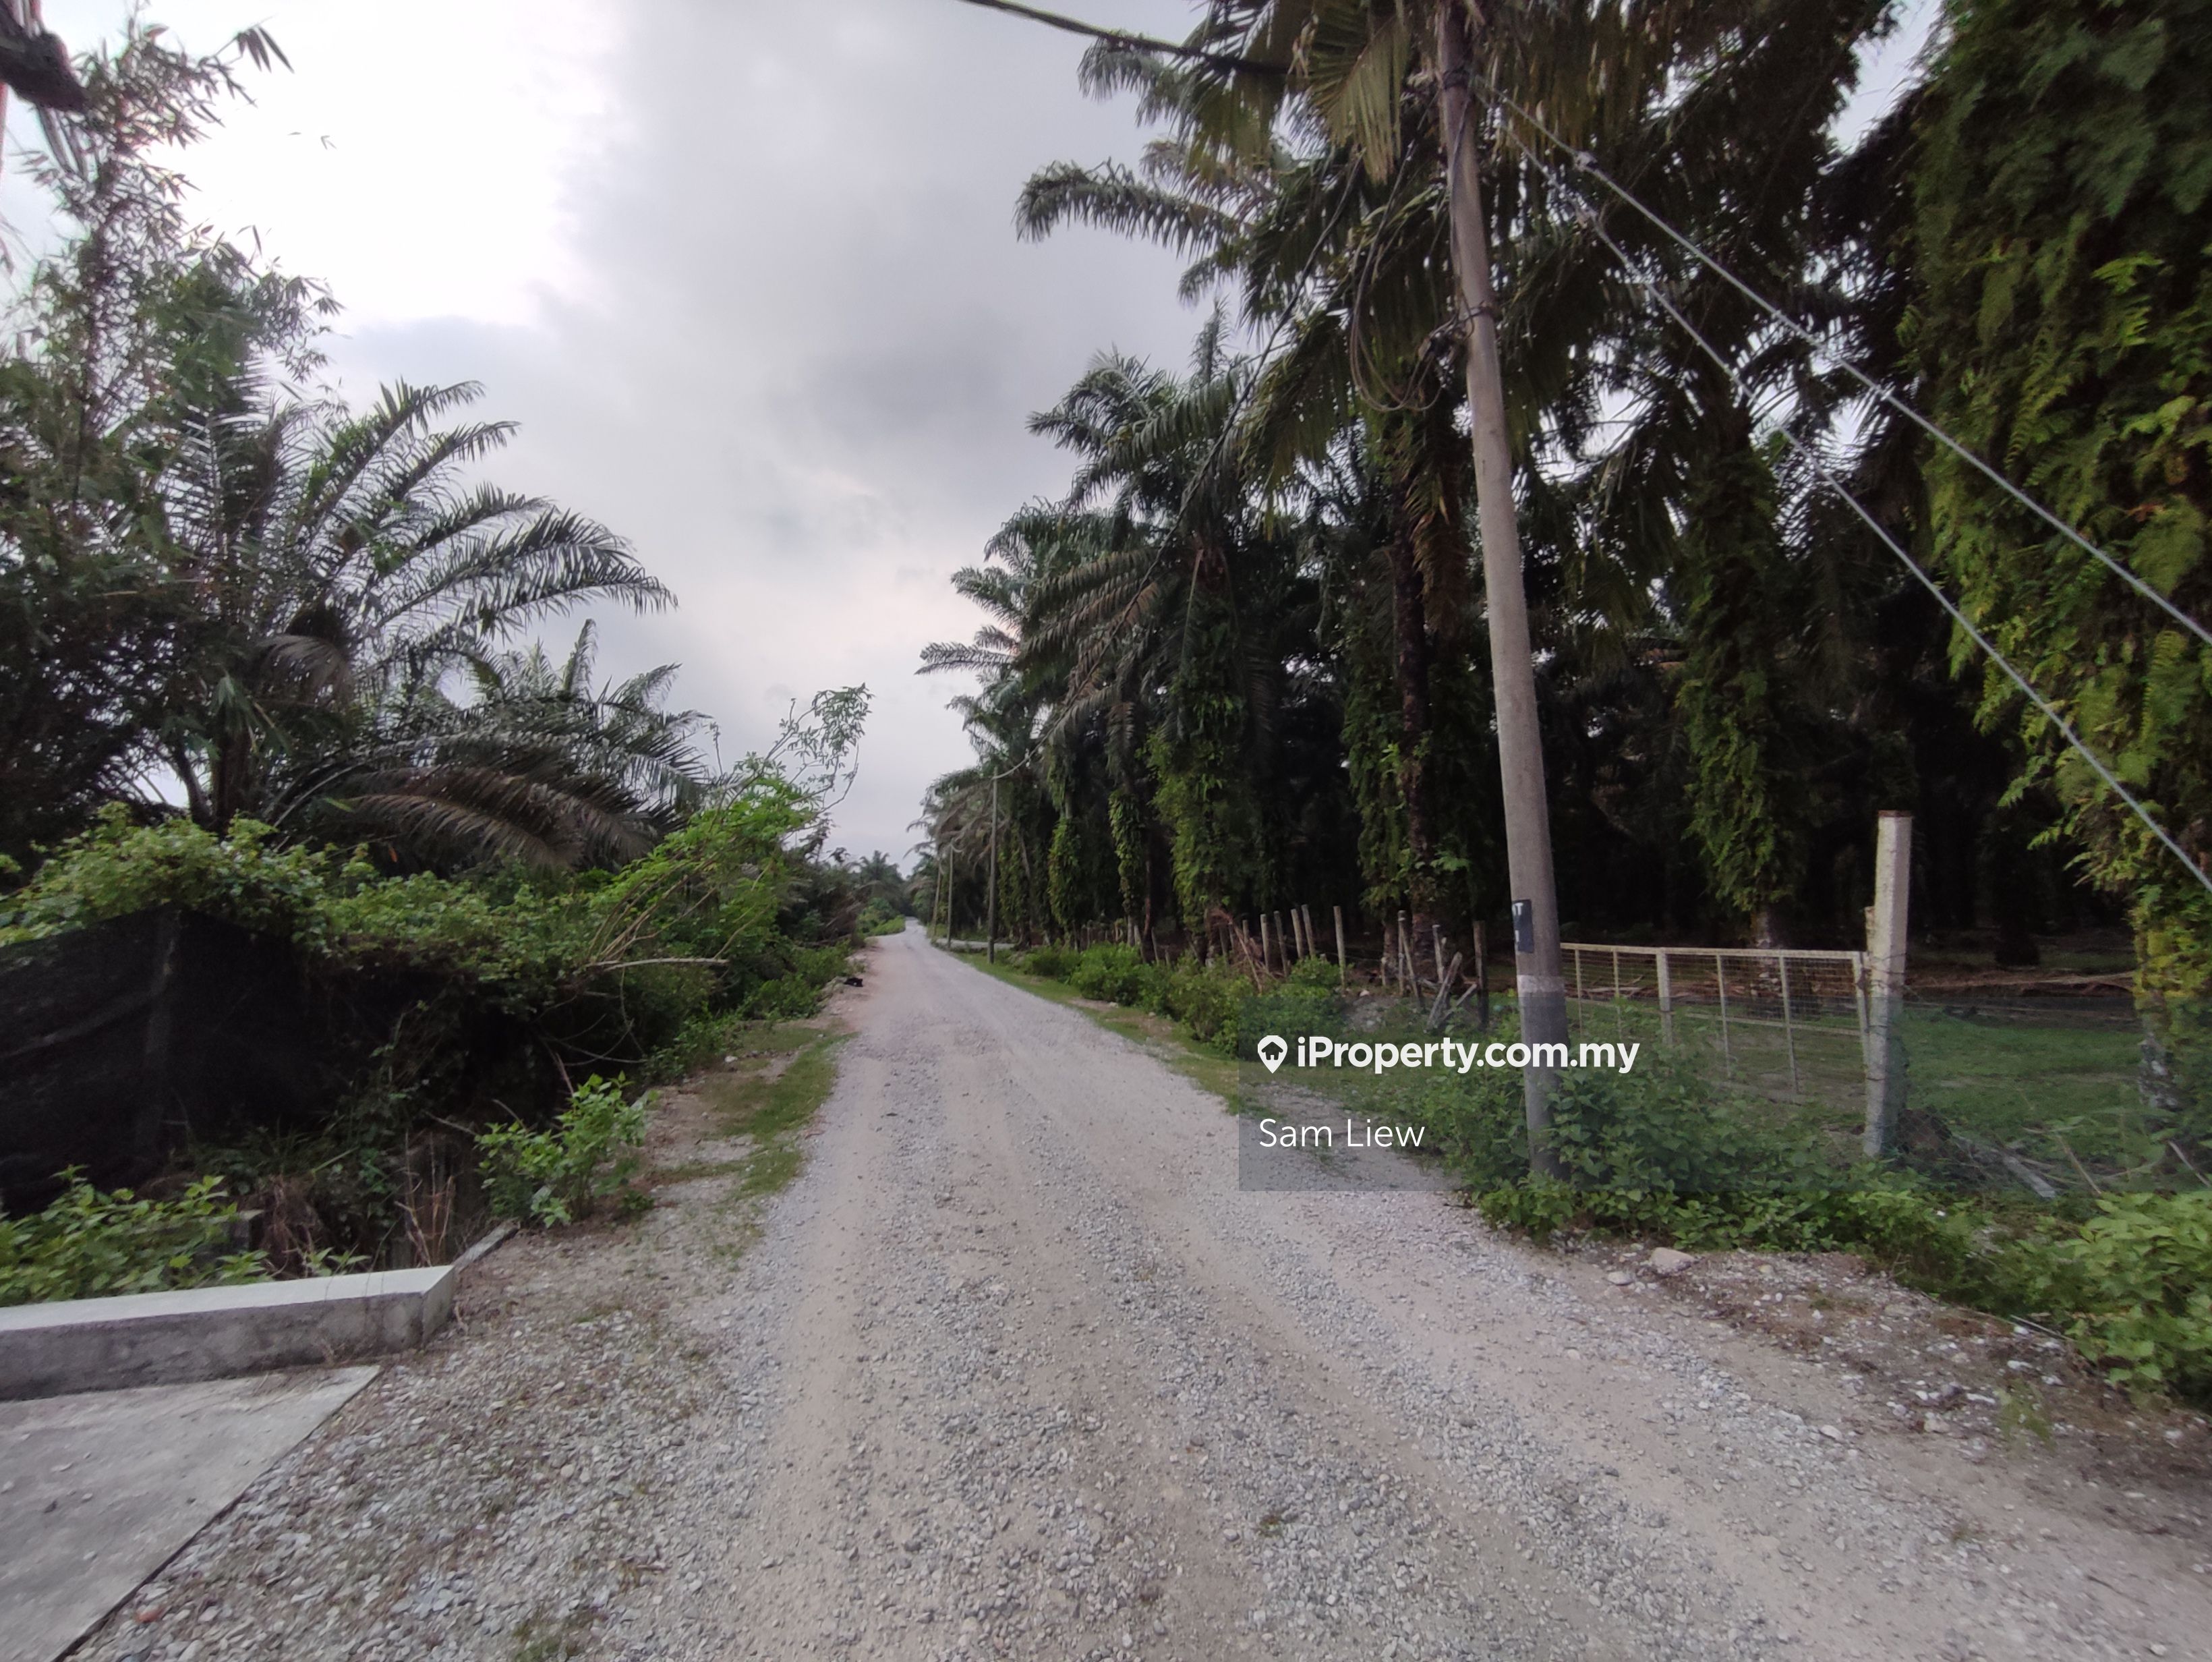 Jalan Teluk Intan-Bidor, Perak , Sungkai Agricultural Land for sale | iProperty.com.my